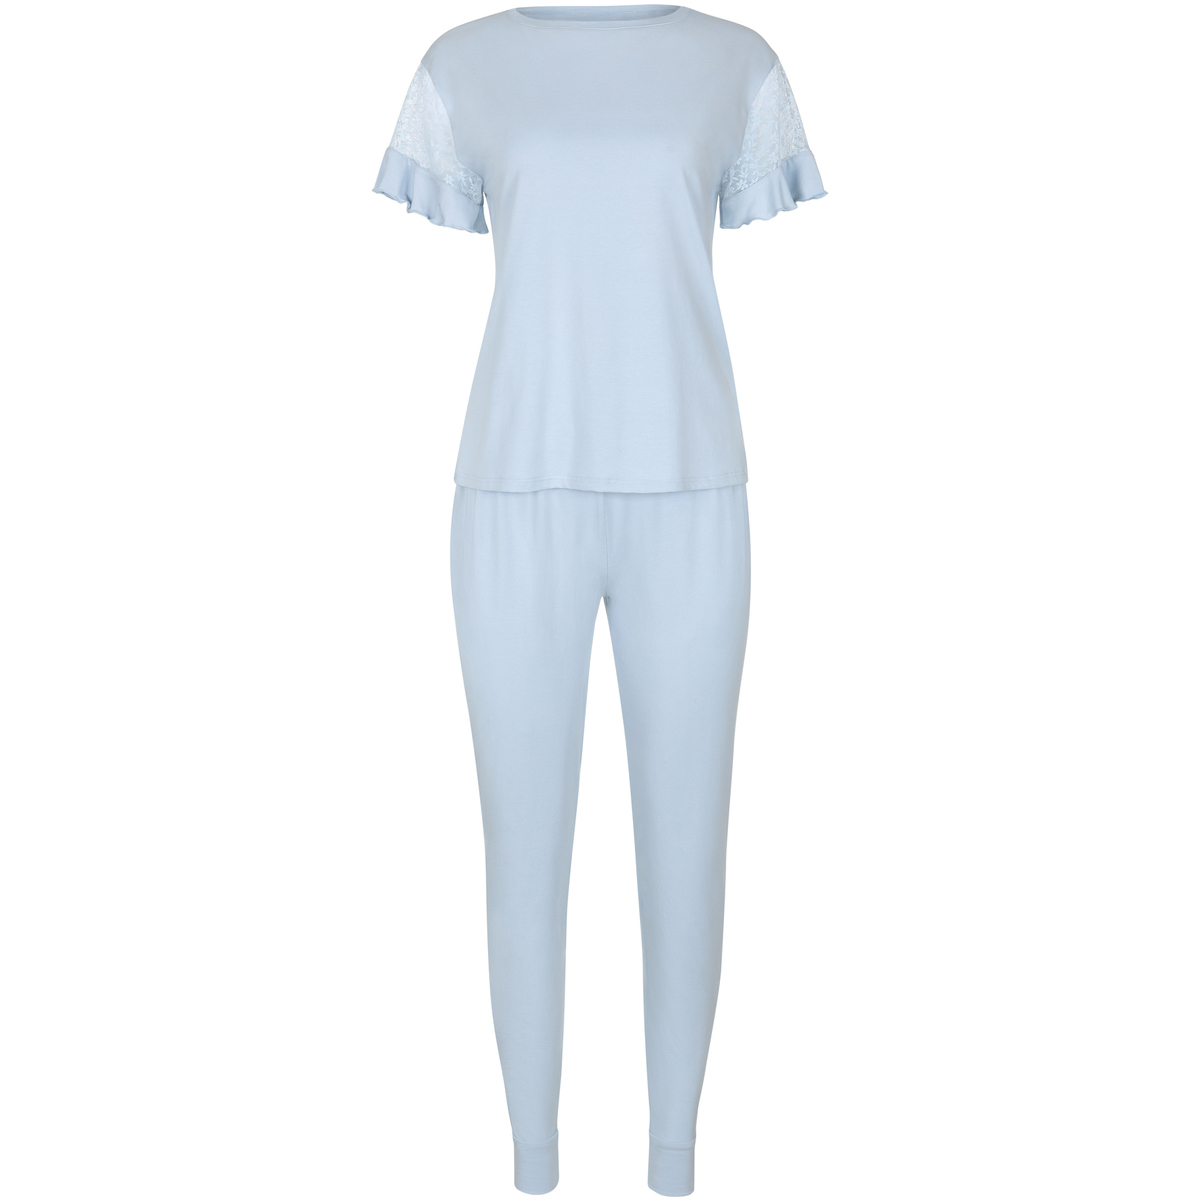 Textiel Dames Pyjama's / nachthemden Lisca Pyjama broek top korte mouwen Smooth  Cheek Blauw